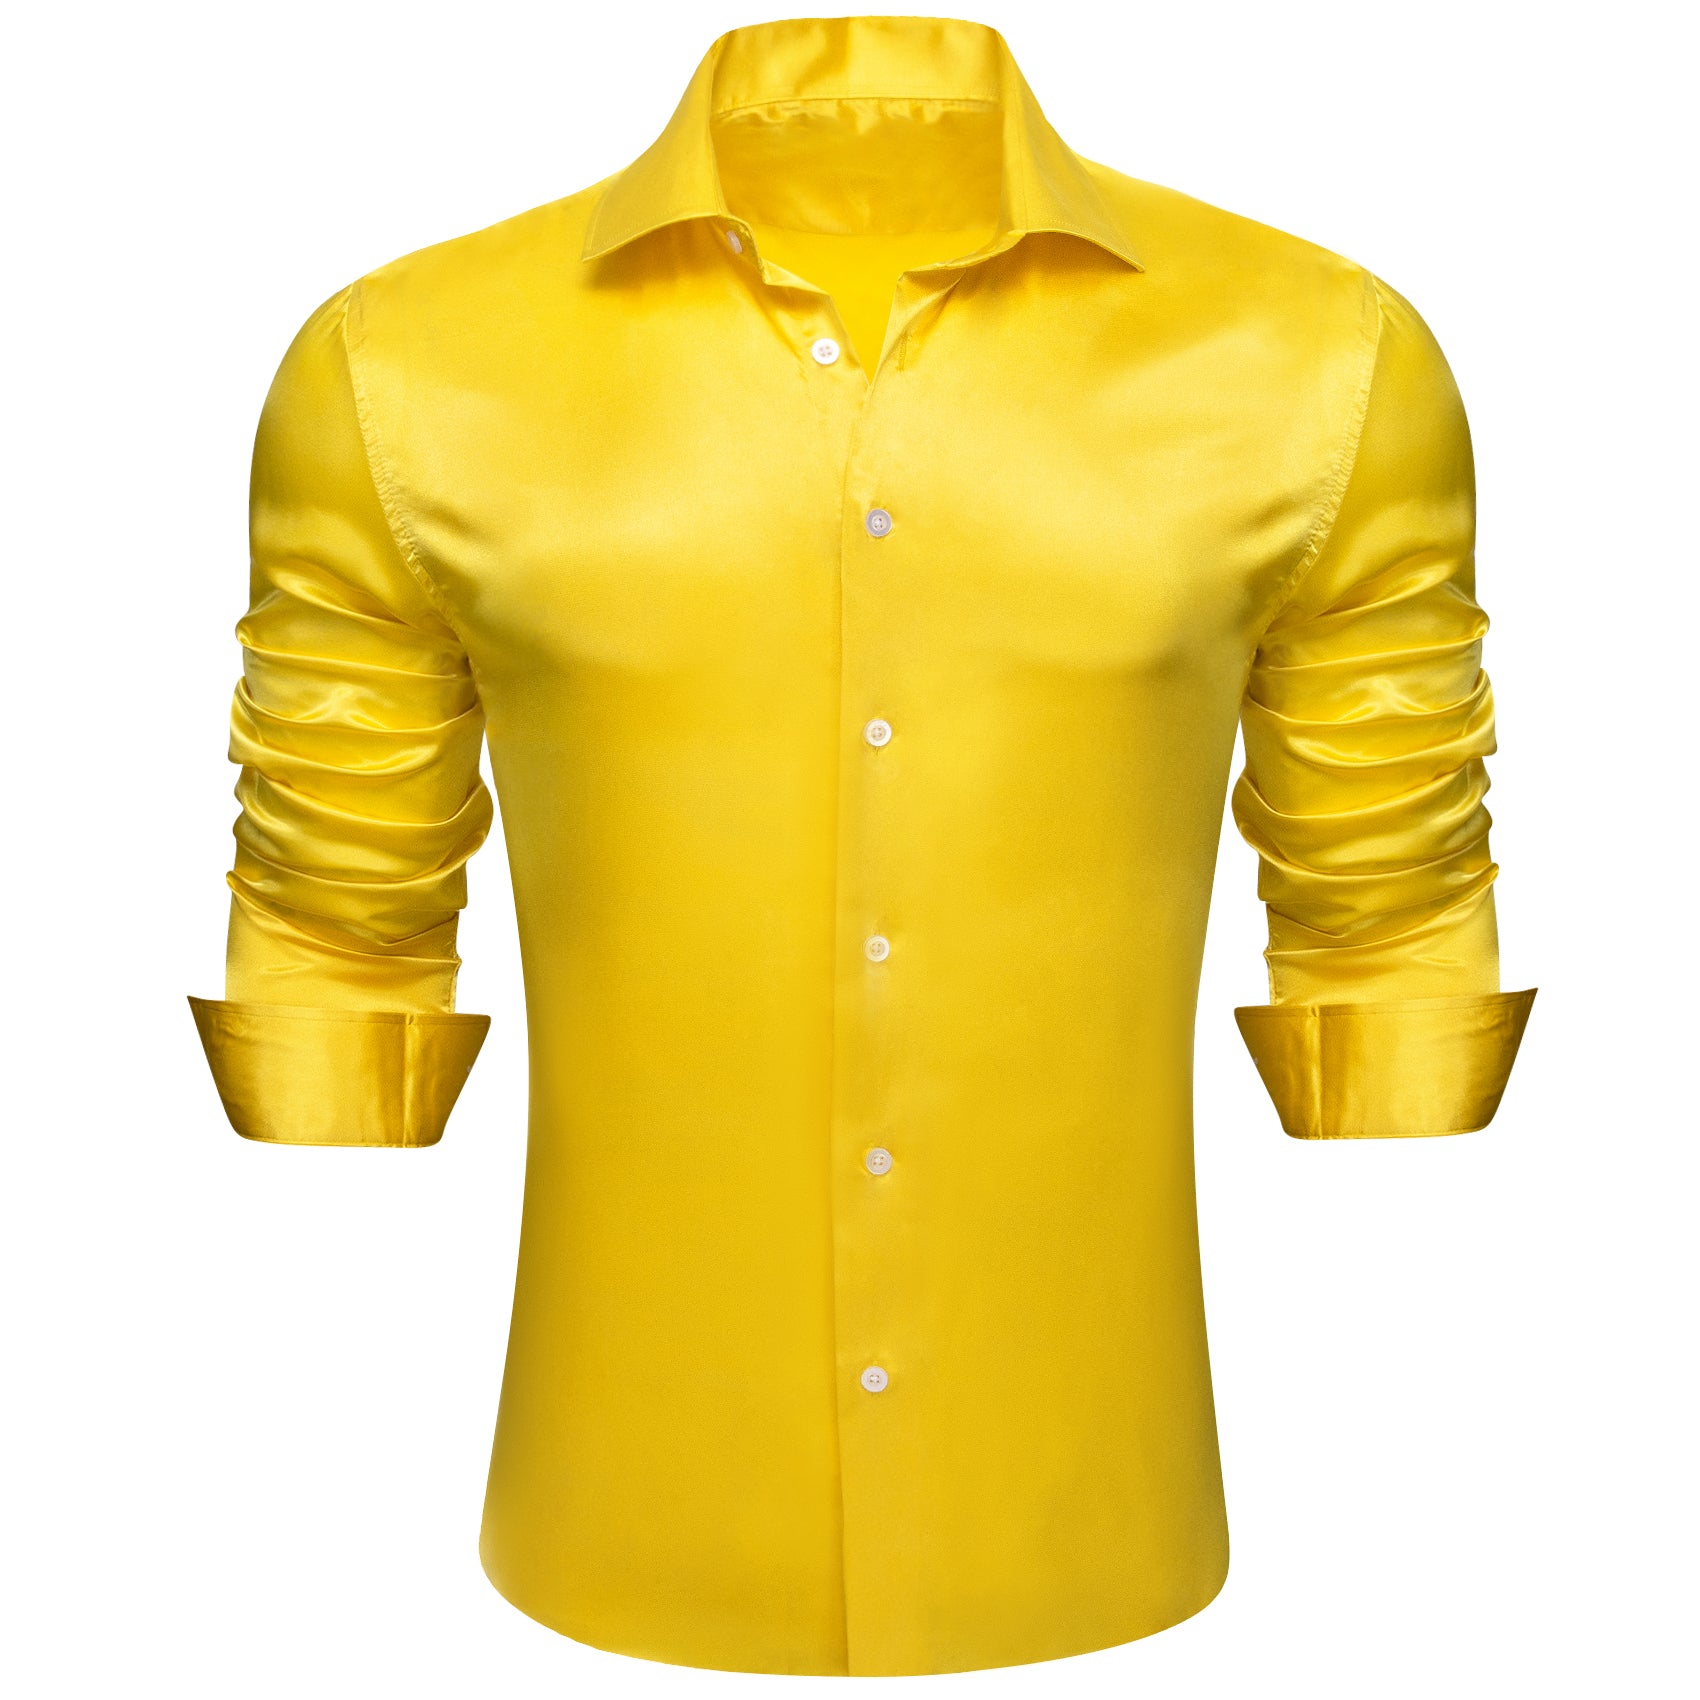 Barry.wang Men's Shirt Bright Yellow Solid Silk Long Sleeve Shirt Business